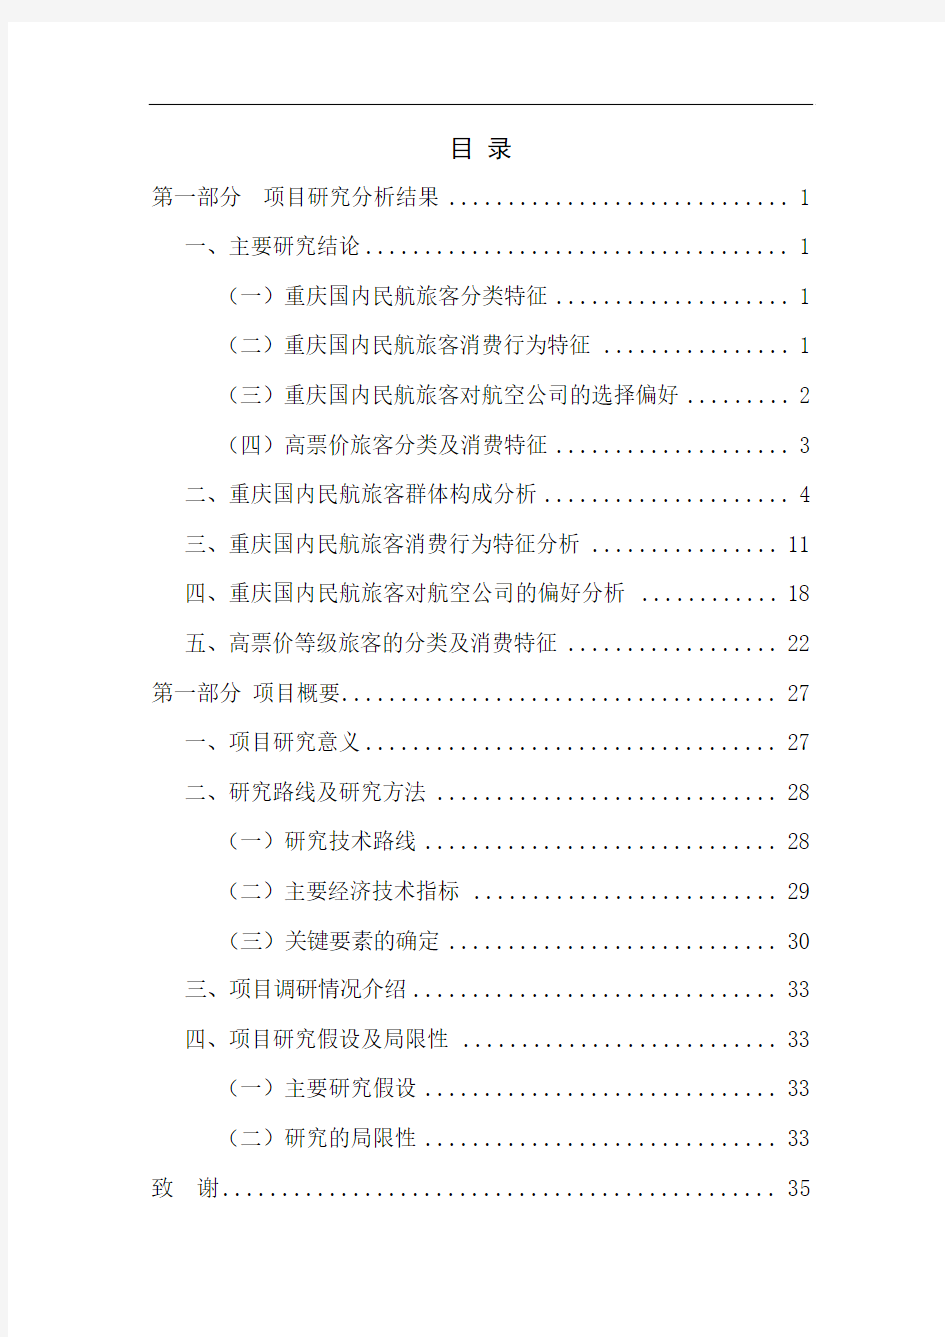 23 2010年重庆民航国内旅客市场特征研究报告(定稿)